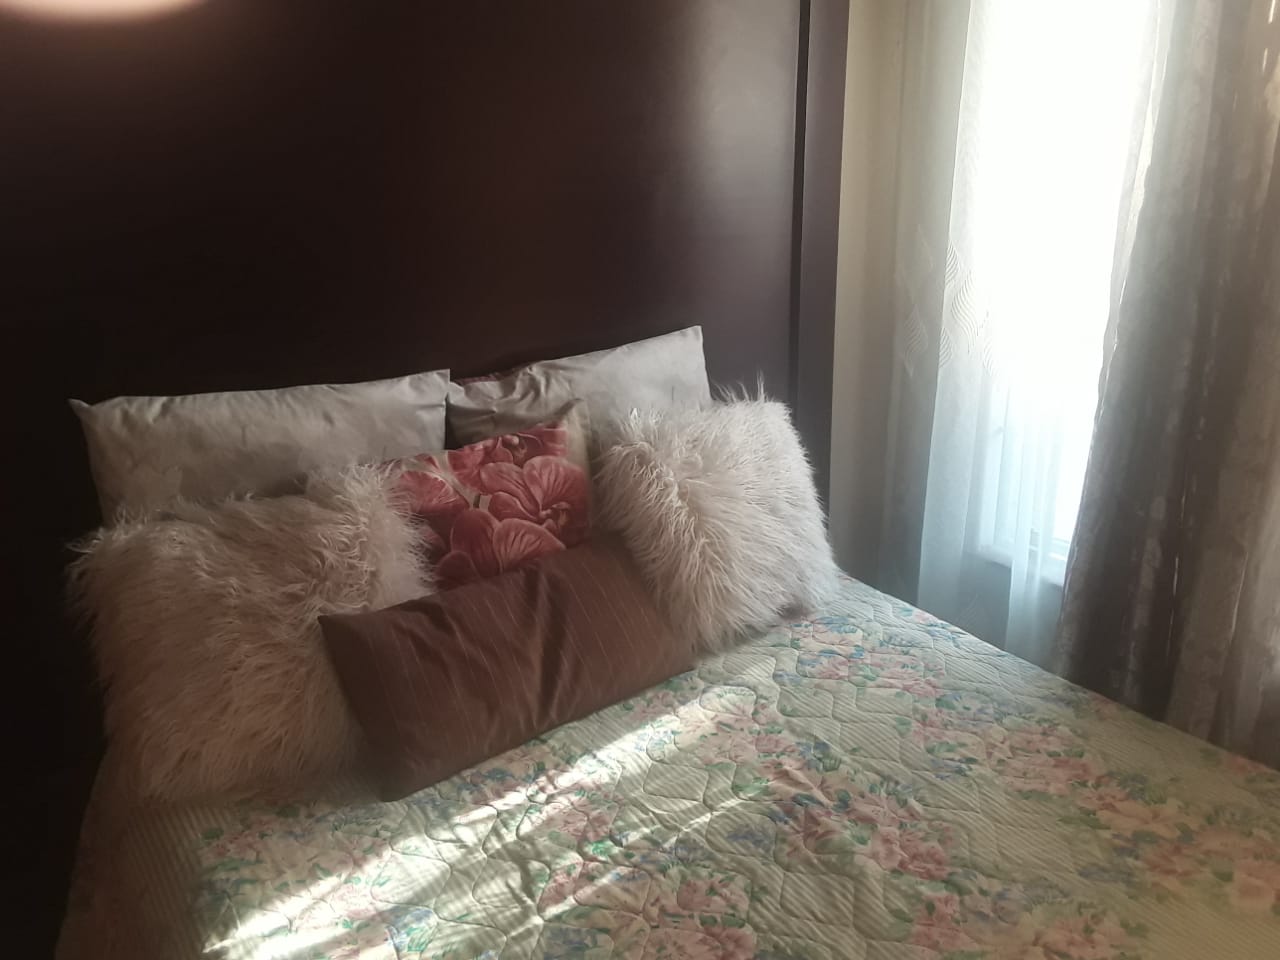  Bedroom Property for Sale in Arborpark KwaZulu-Natal